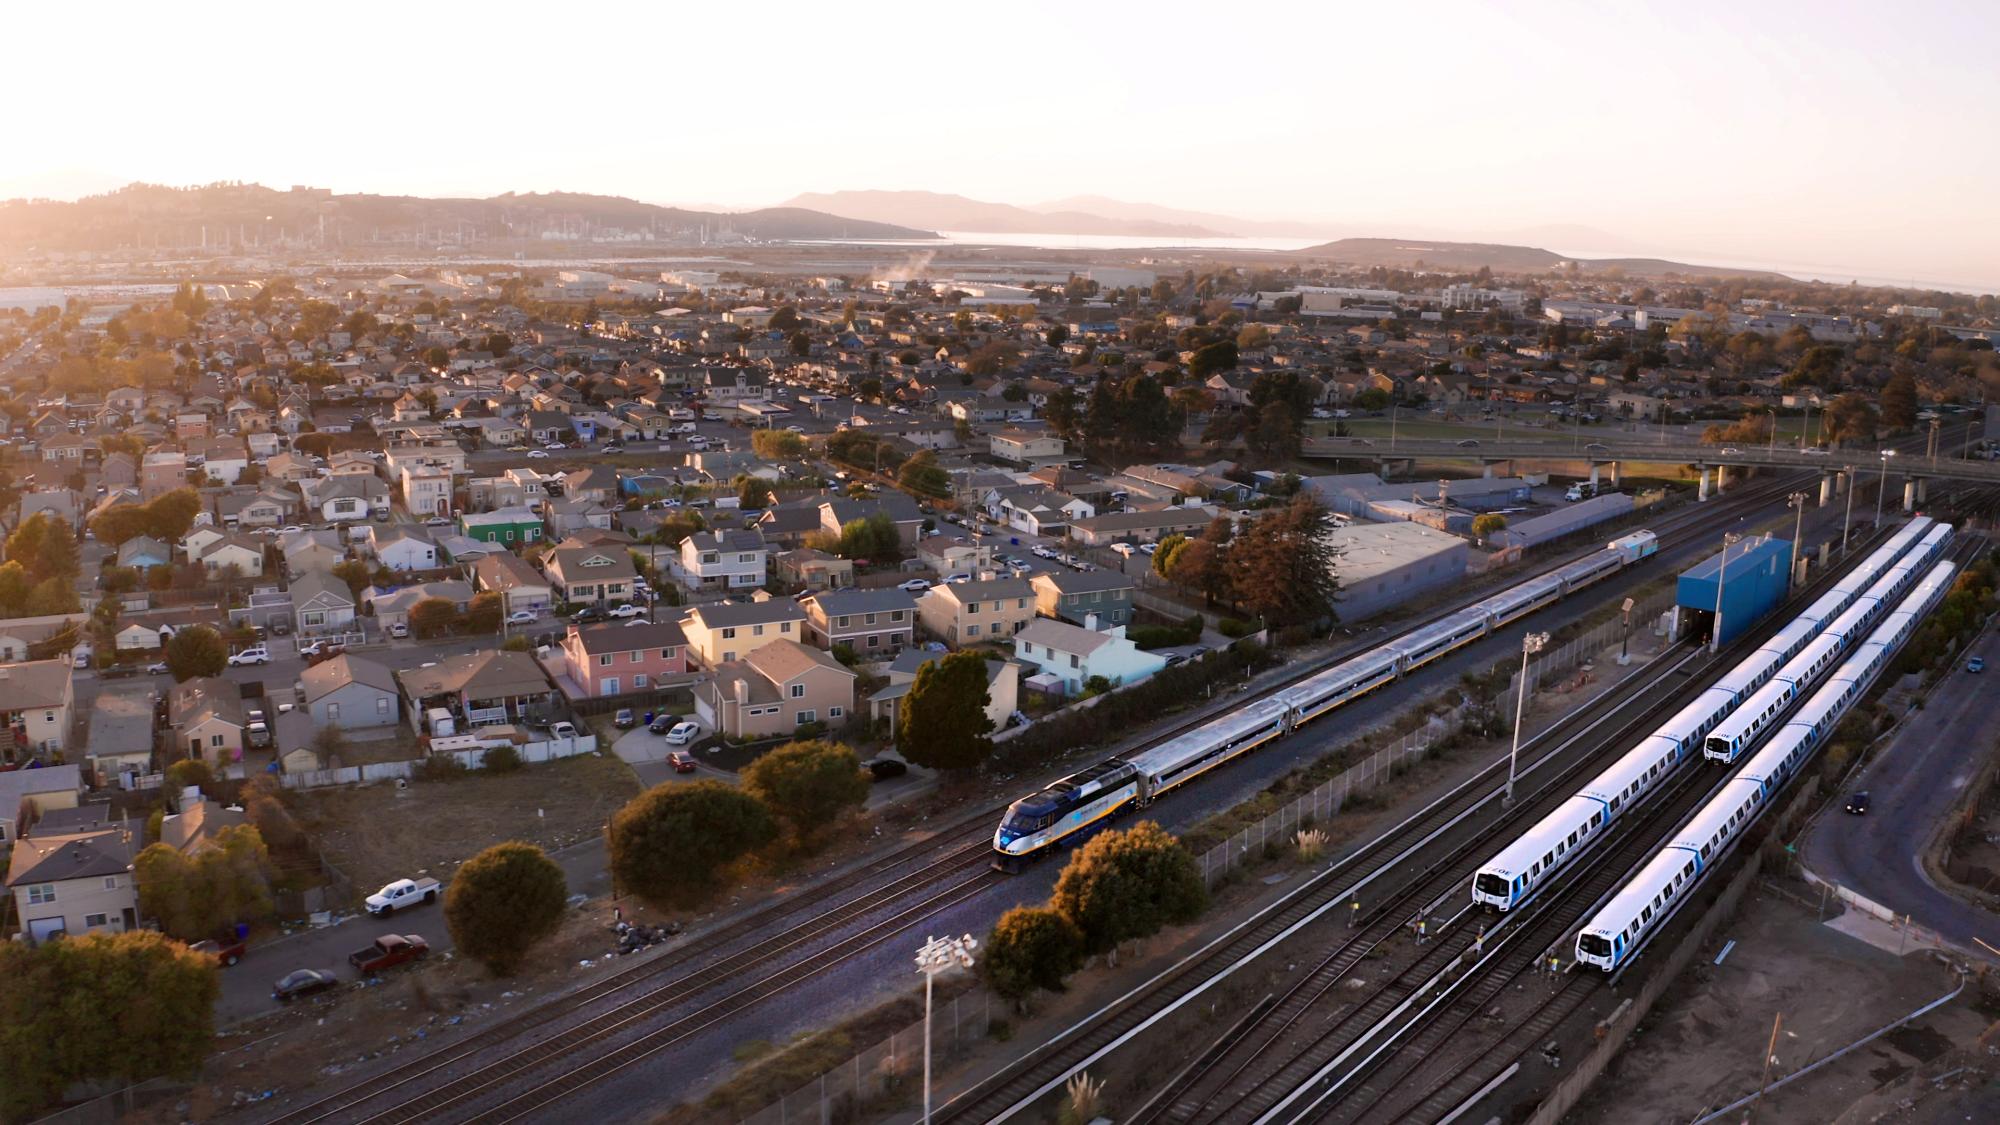 Una vista aérea en Richmond, California muestra un vecindario residencial en expansión adyacente al derecho de paso de Capitol Corridor y el servicio BART, con varios trenes sobre las vías.